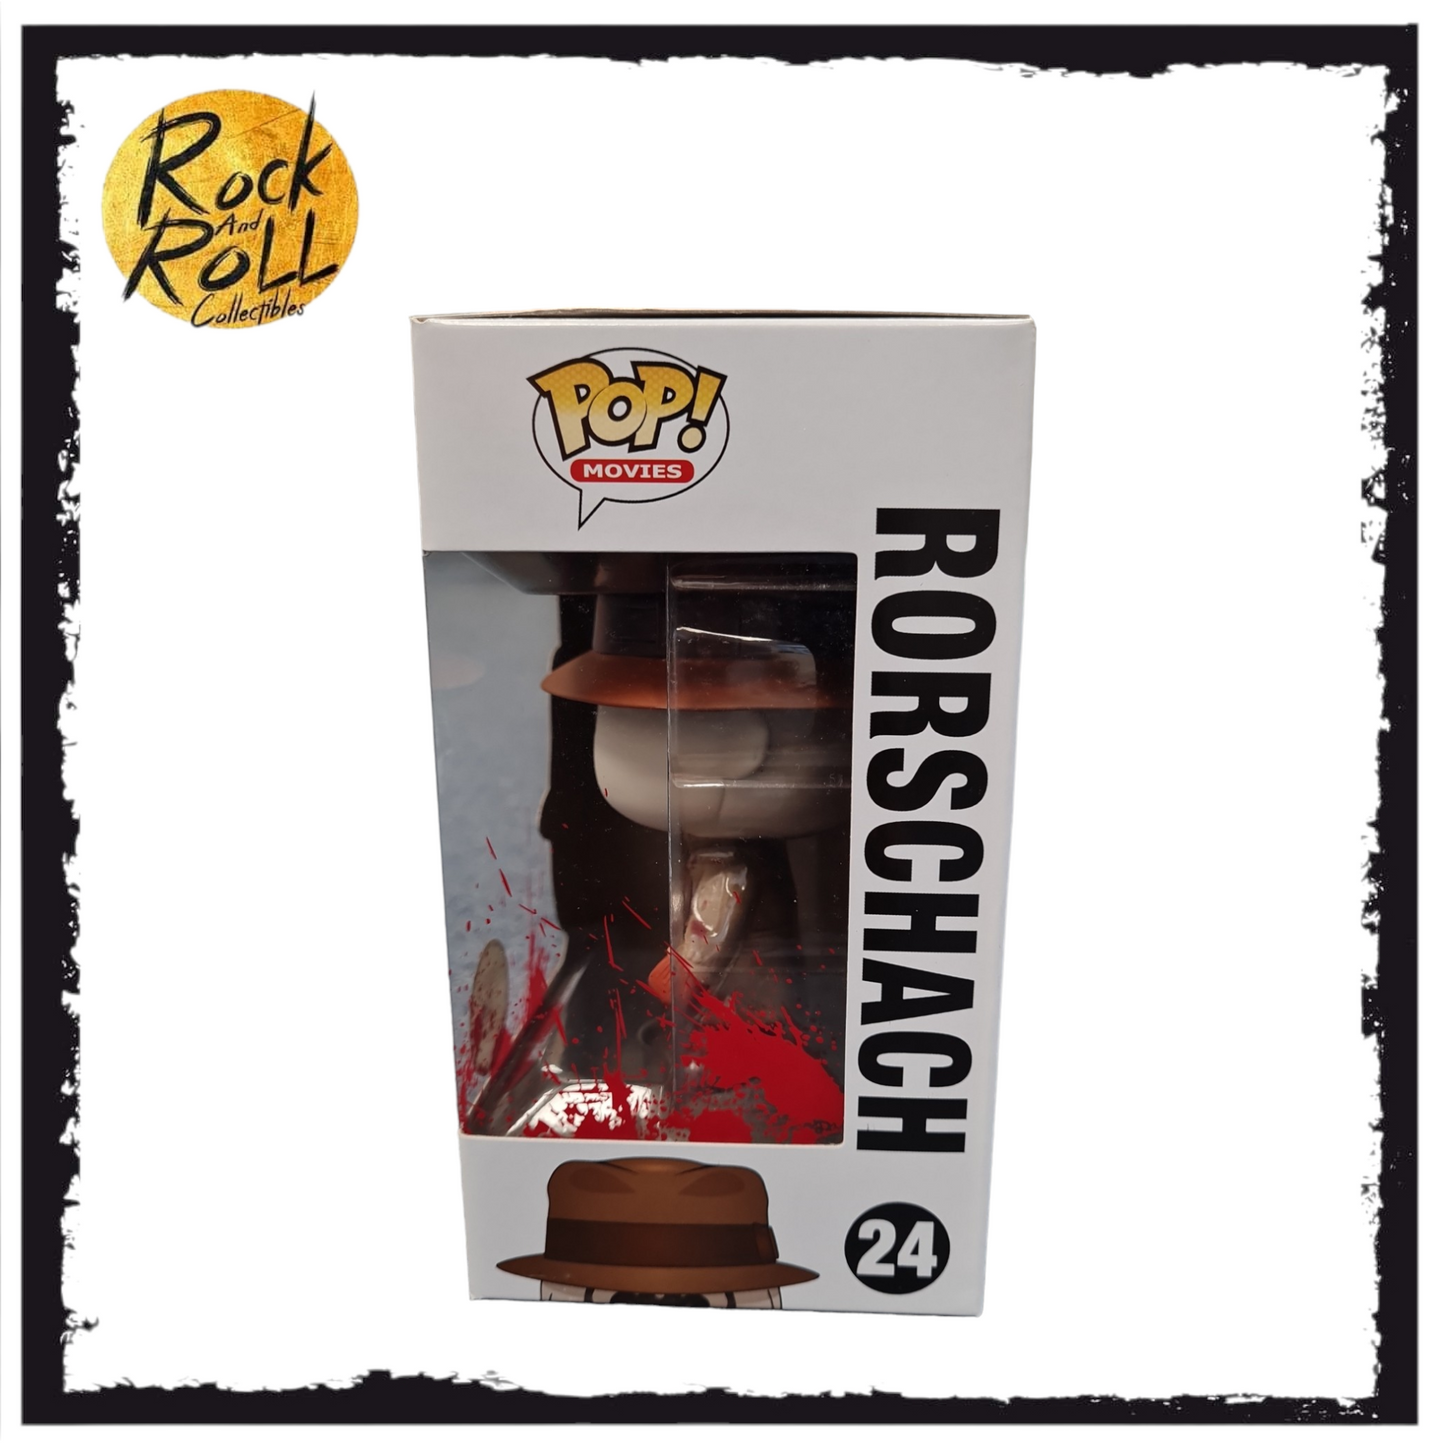 Watchmen - Rorschach (Bloody) Funko Pop! #24 SDCC 2013 LE480pcs. Condition 9/10